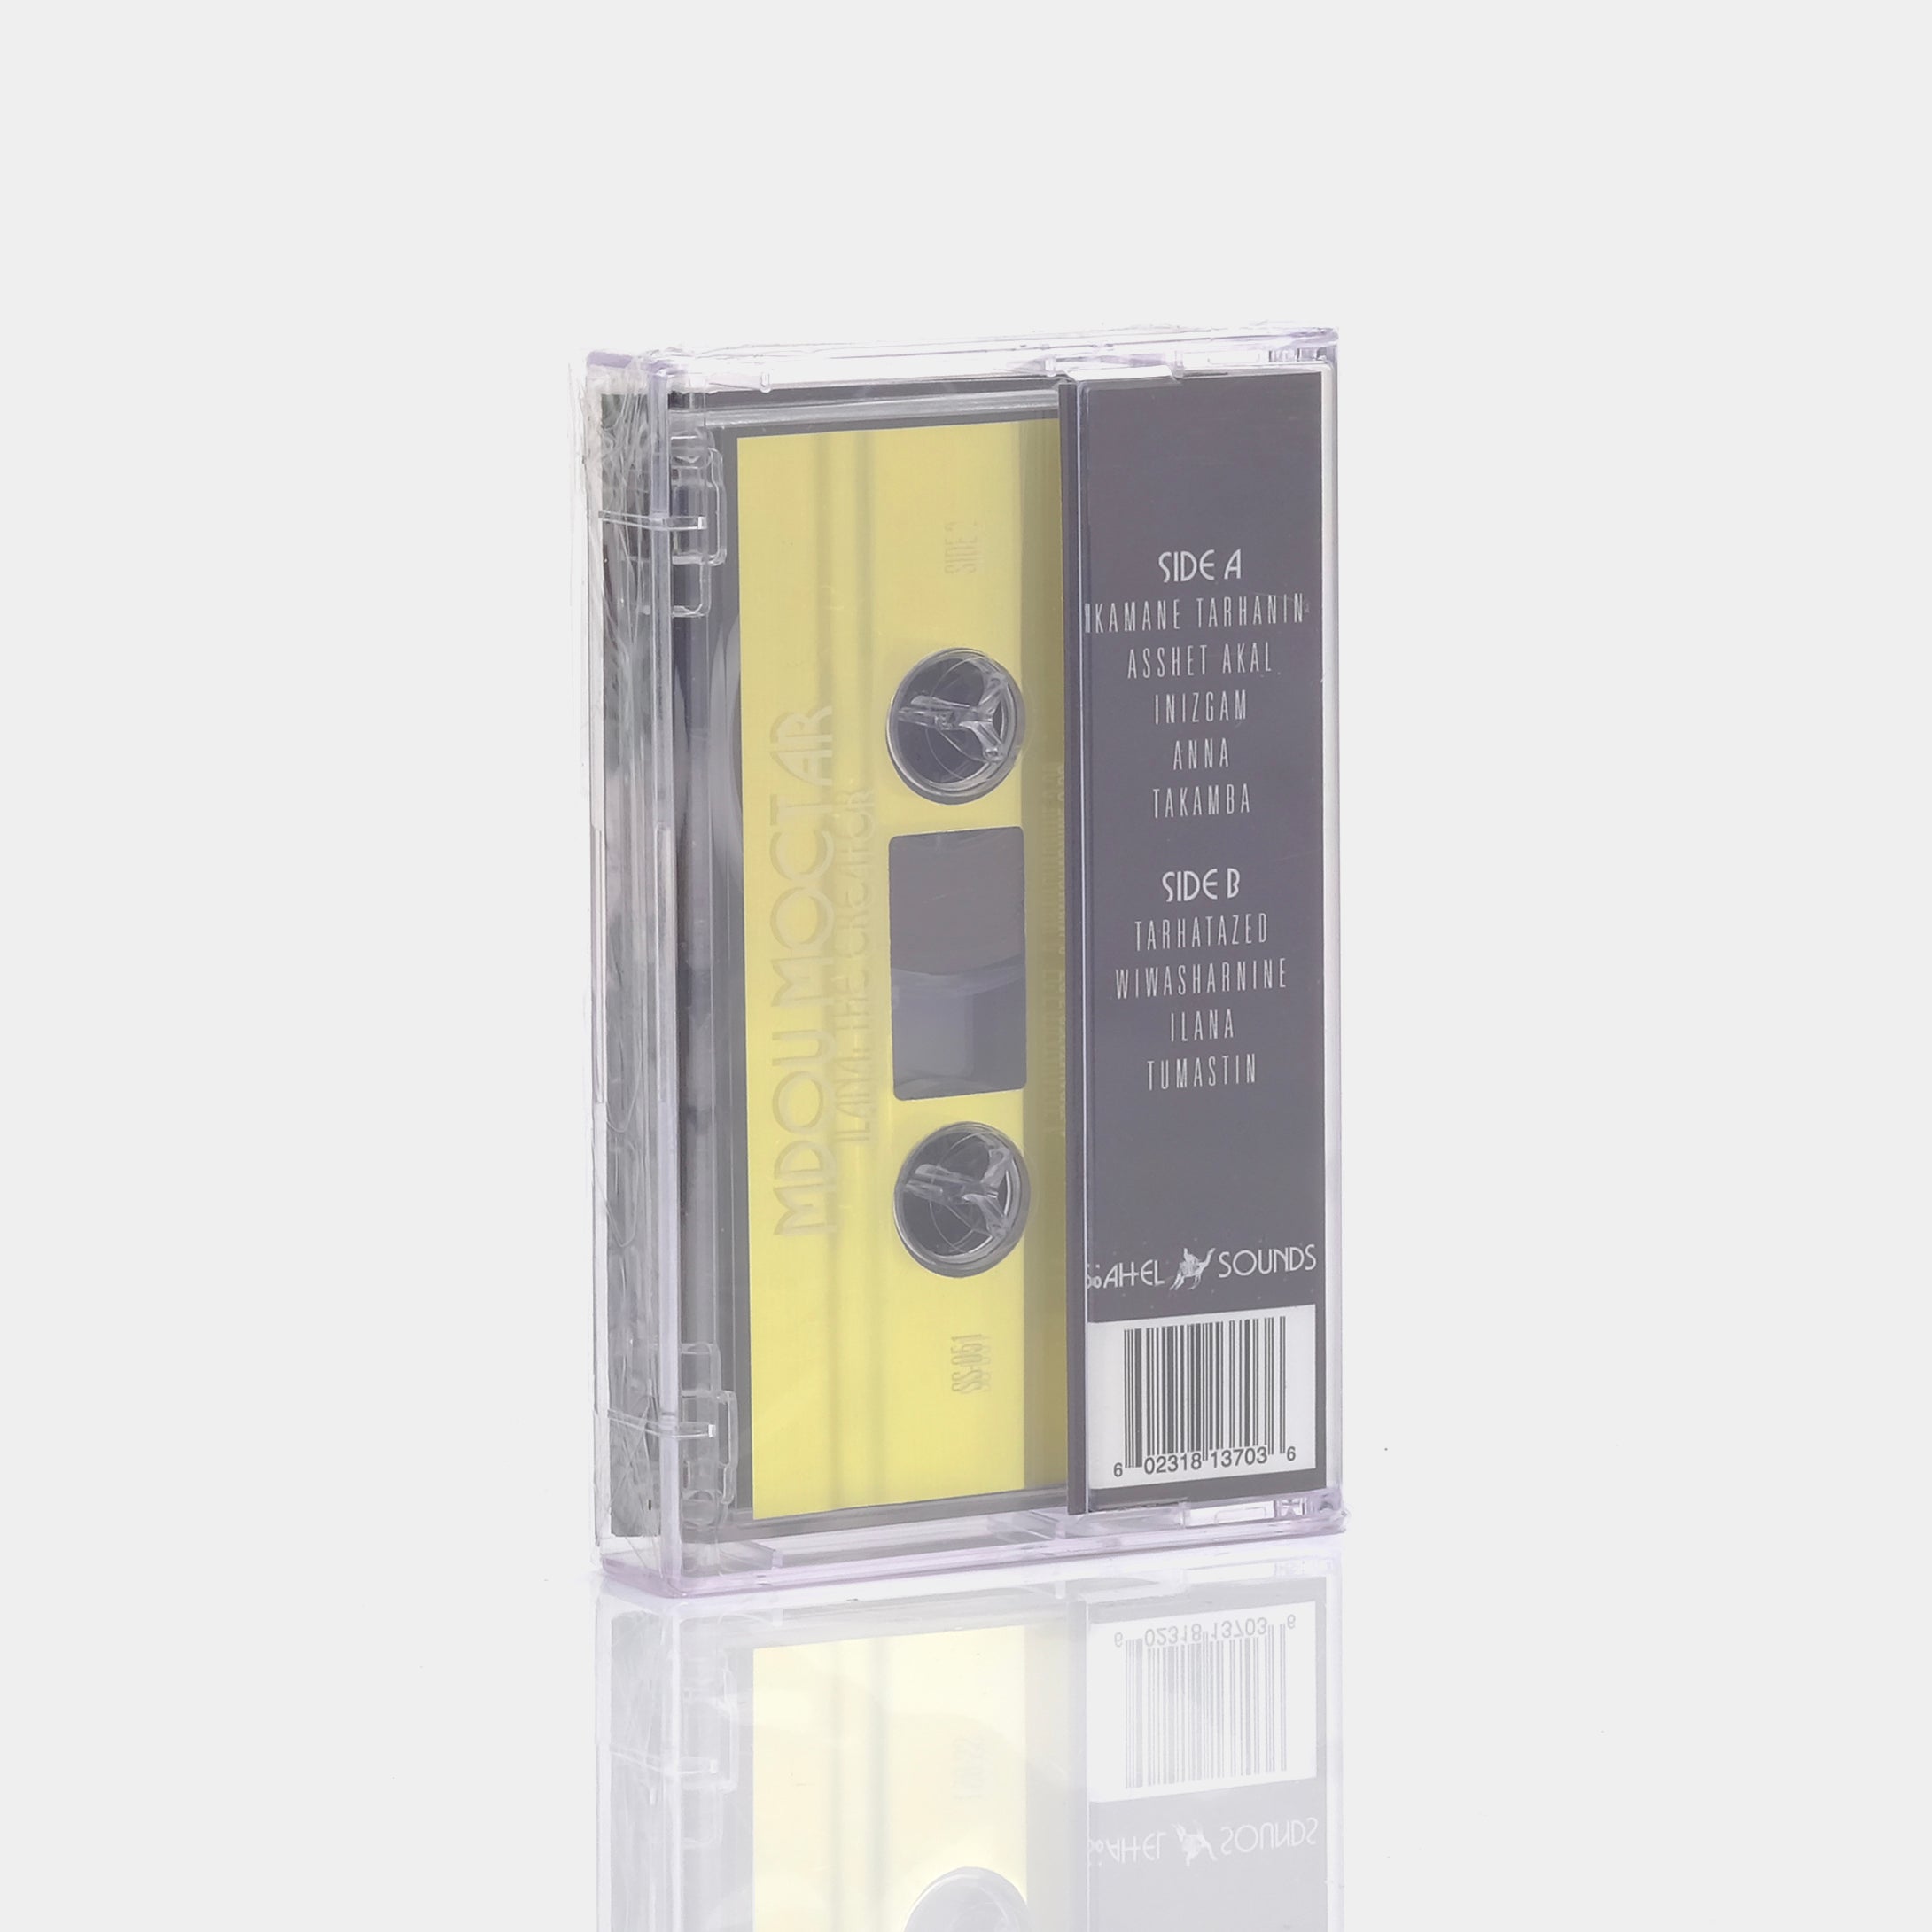 Mdou Moctar - Ilana (The Creator) Cassette Tape